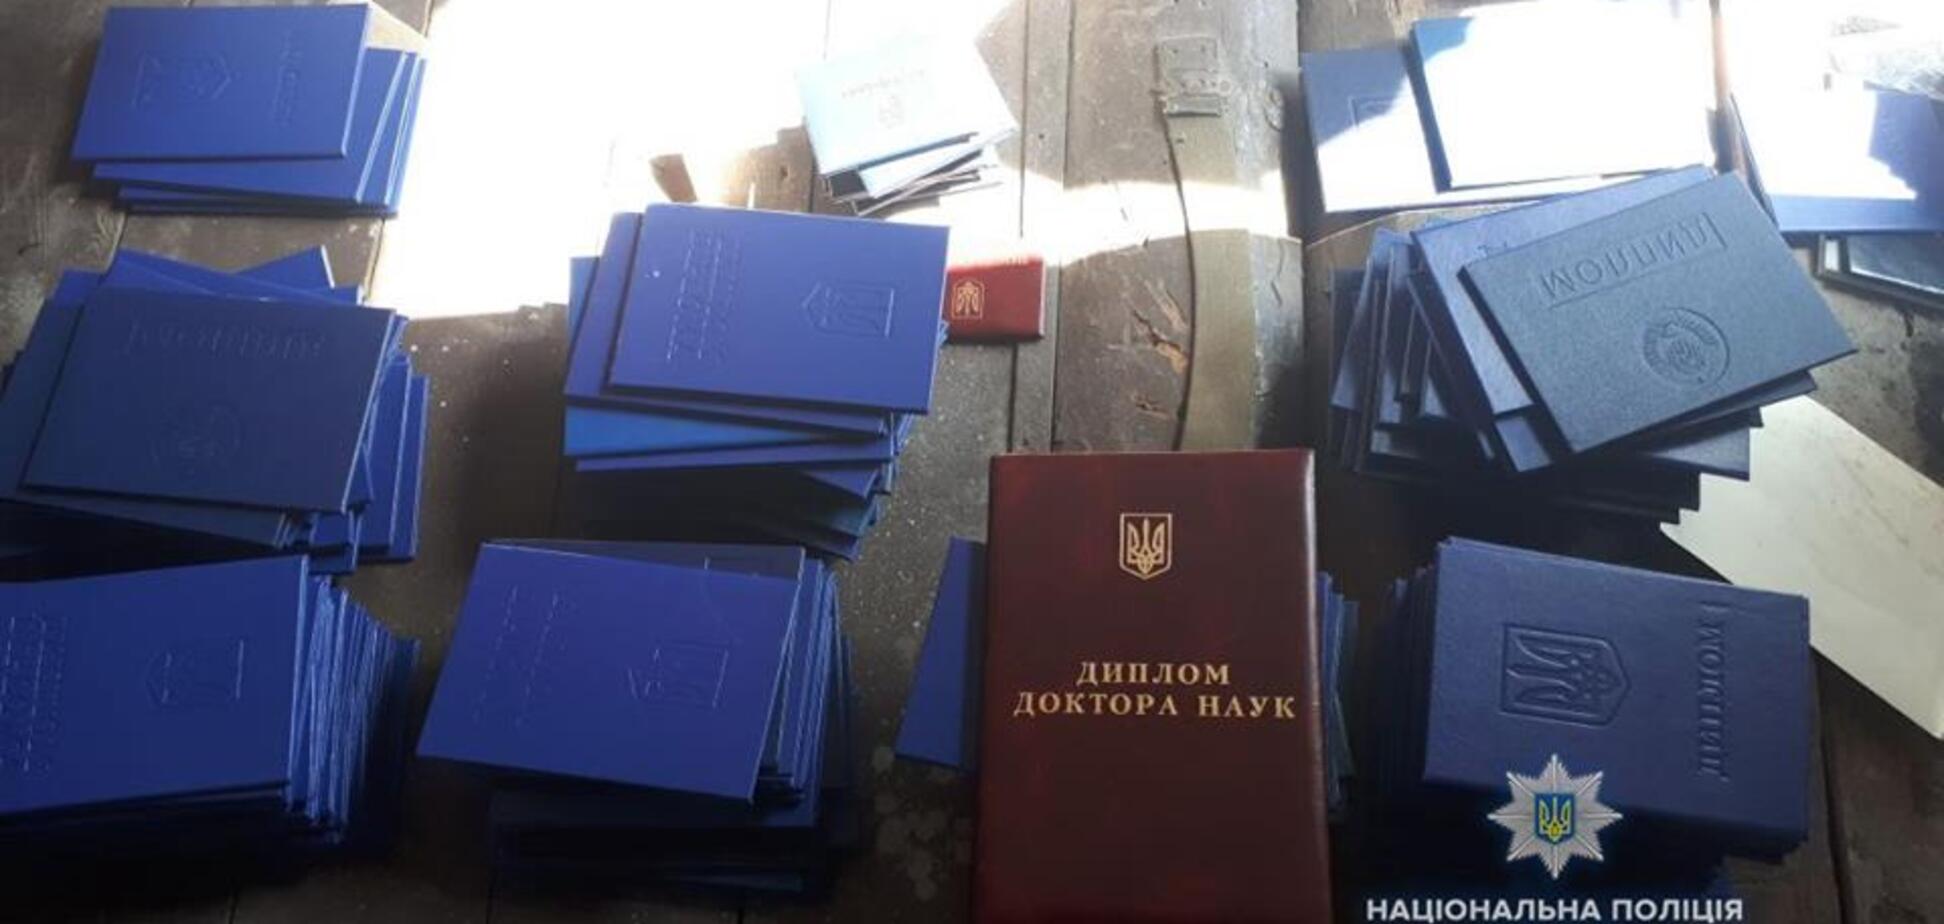 Паспорта, дипломы и права: в Киеве накрыли масштабную аферу